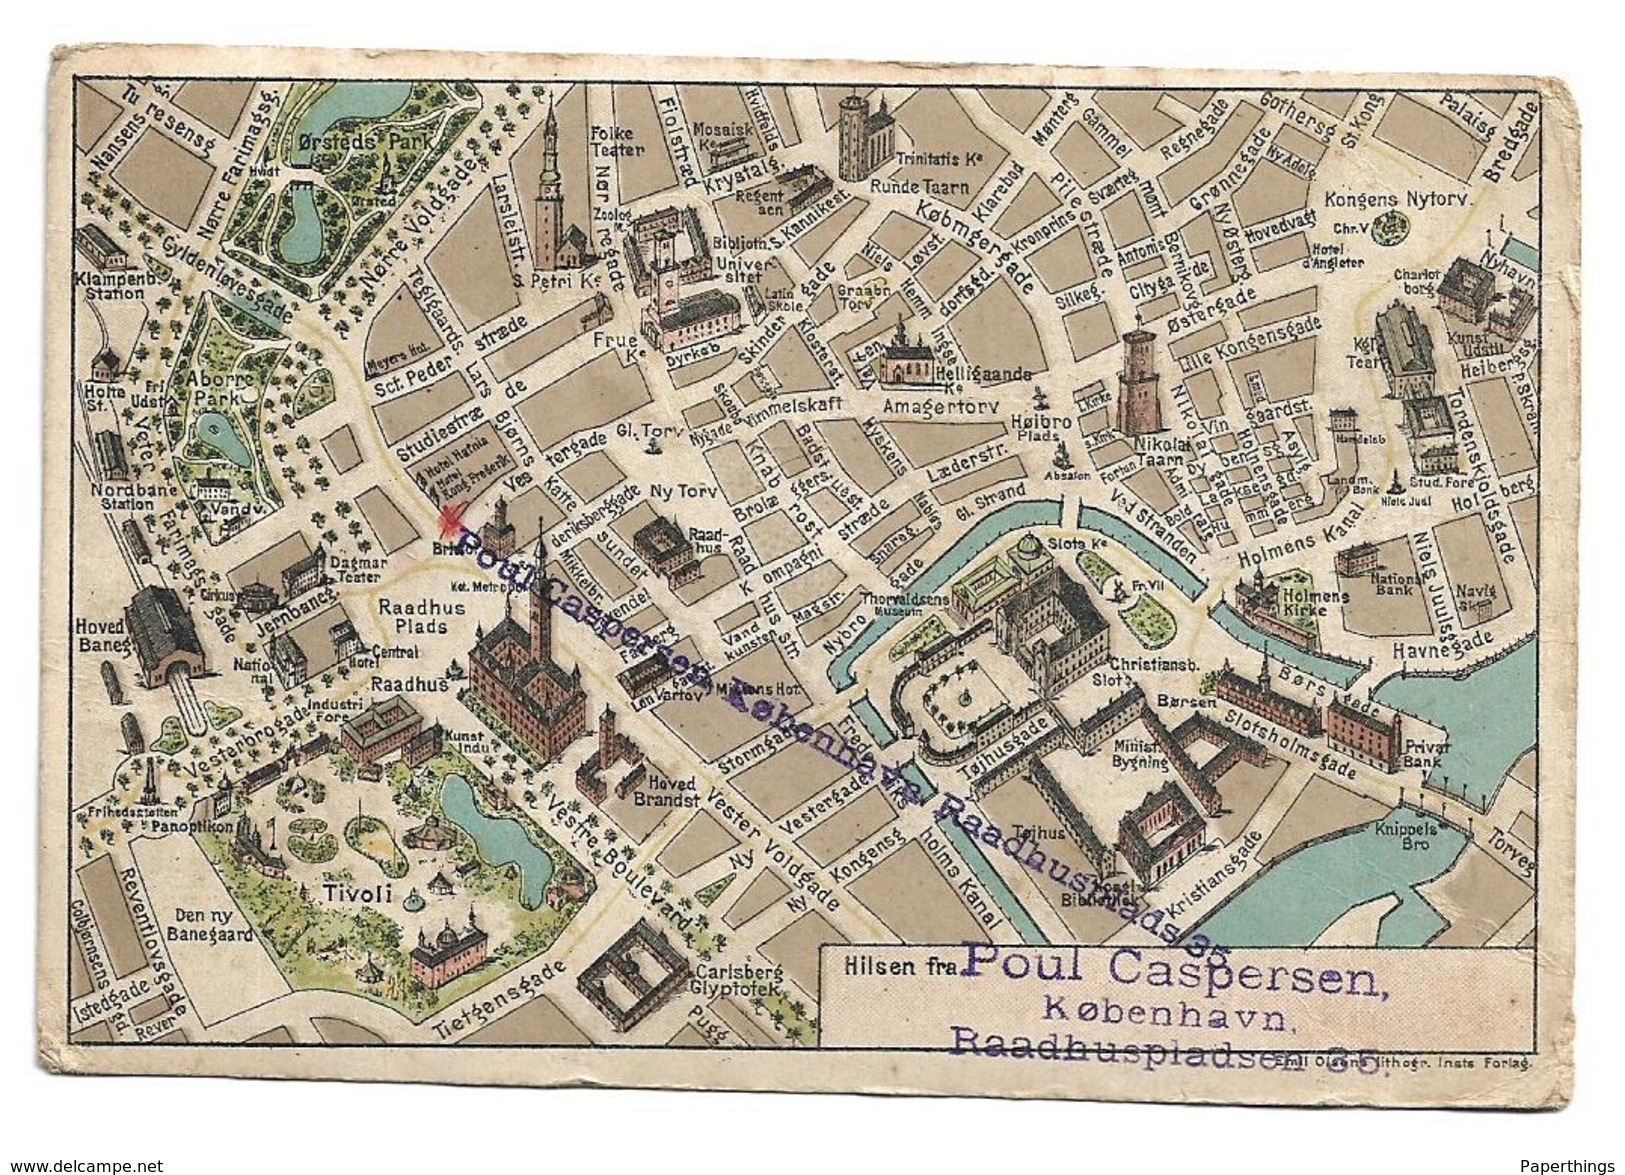 Old Postcard,advertising, Map Of Kobenhaun. Copenhagen, Denmark, Poul Caspersen - Danemark